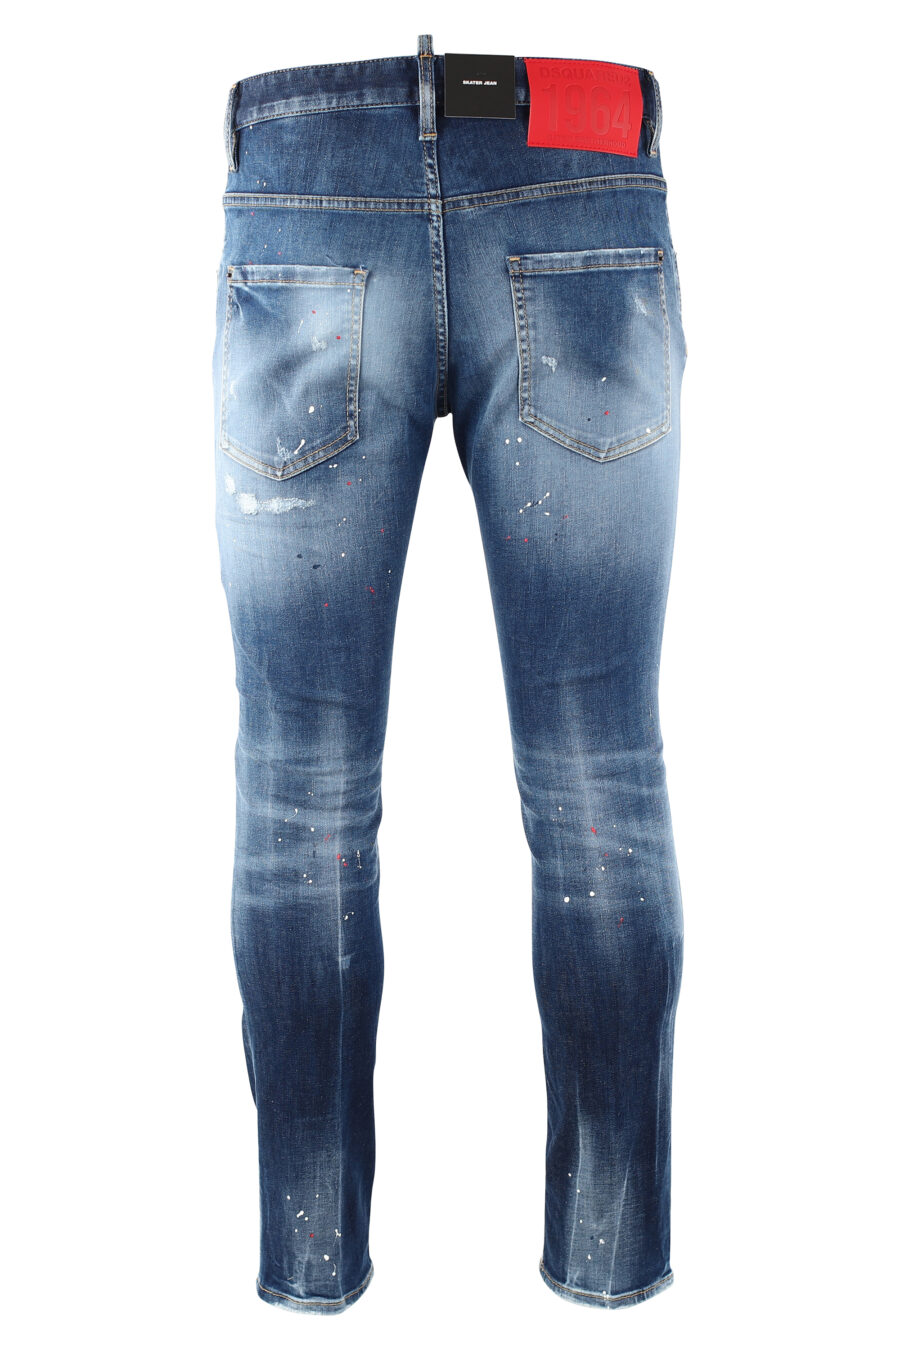 Pantalón vaquero "skater jean" azul desgastado con pintura blanca - IMG 9726